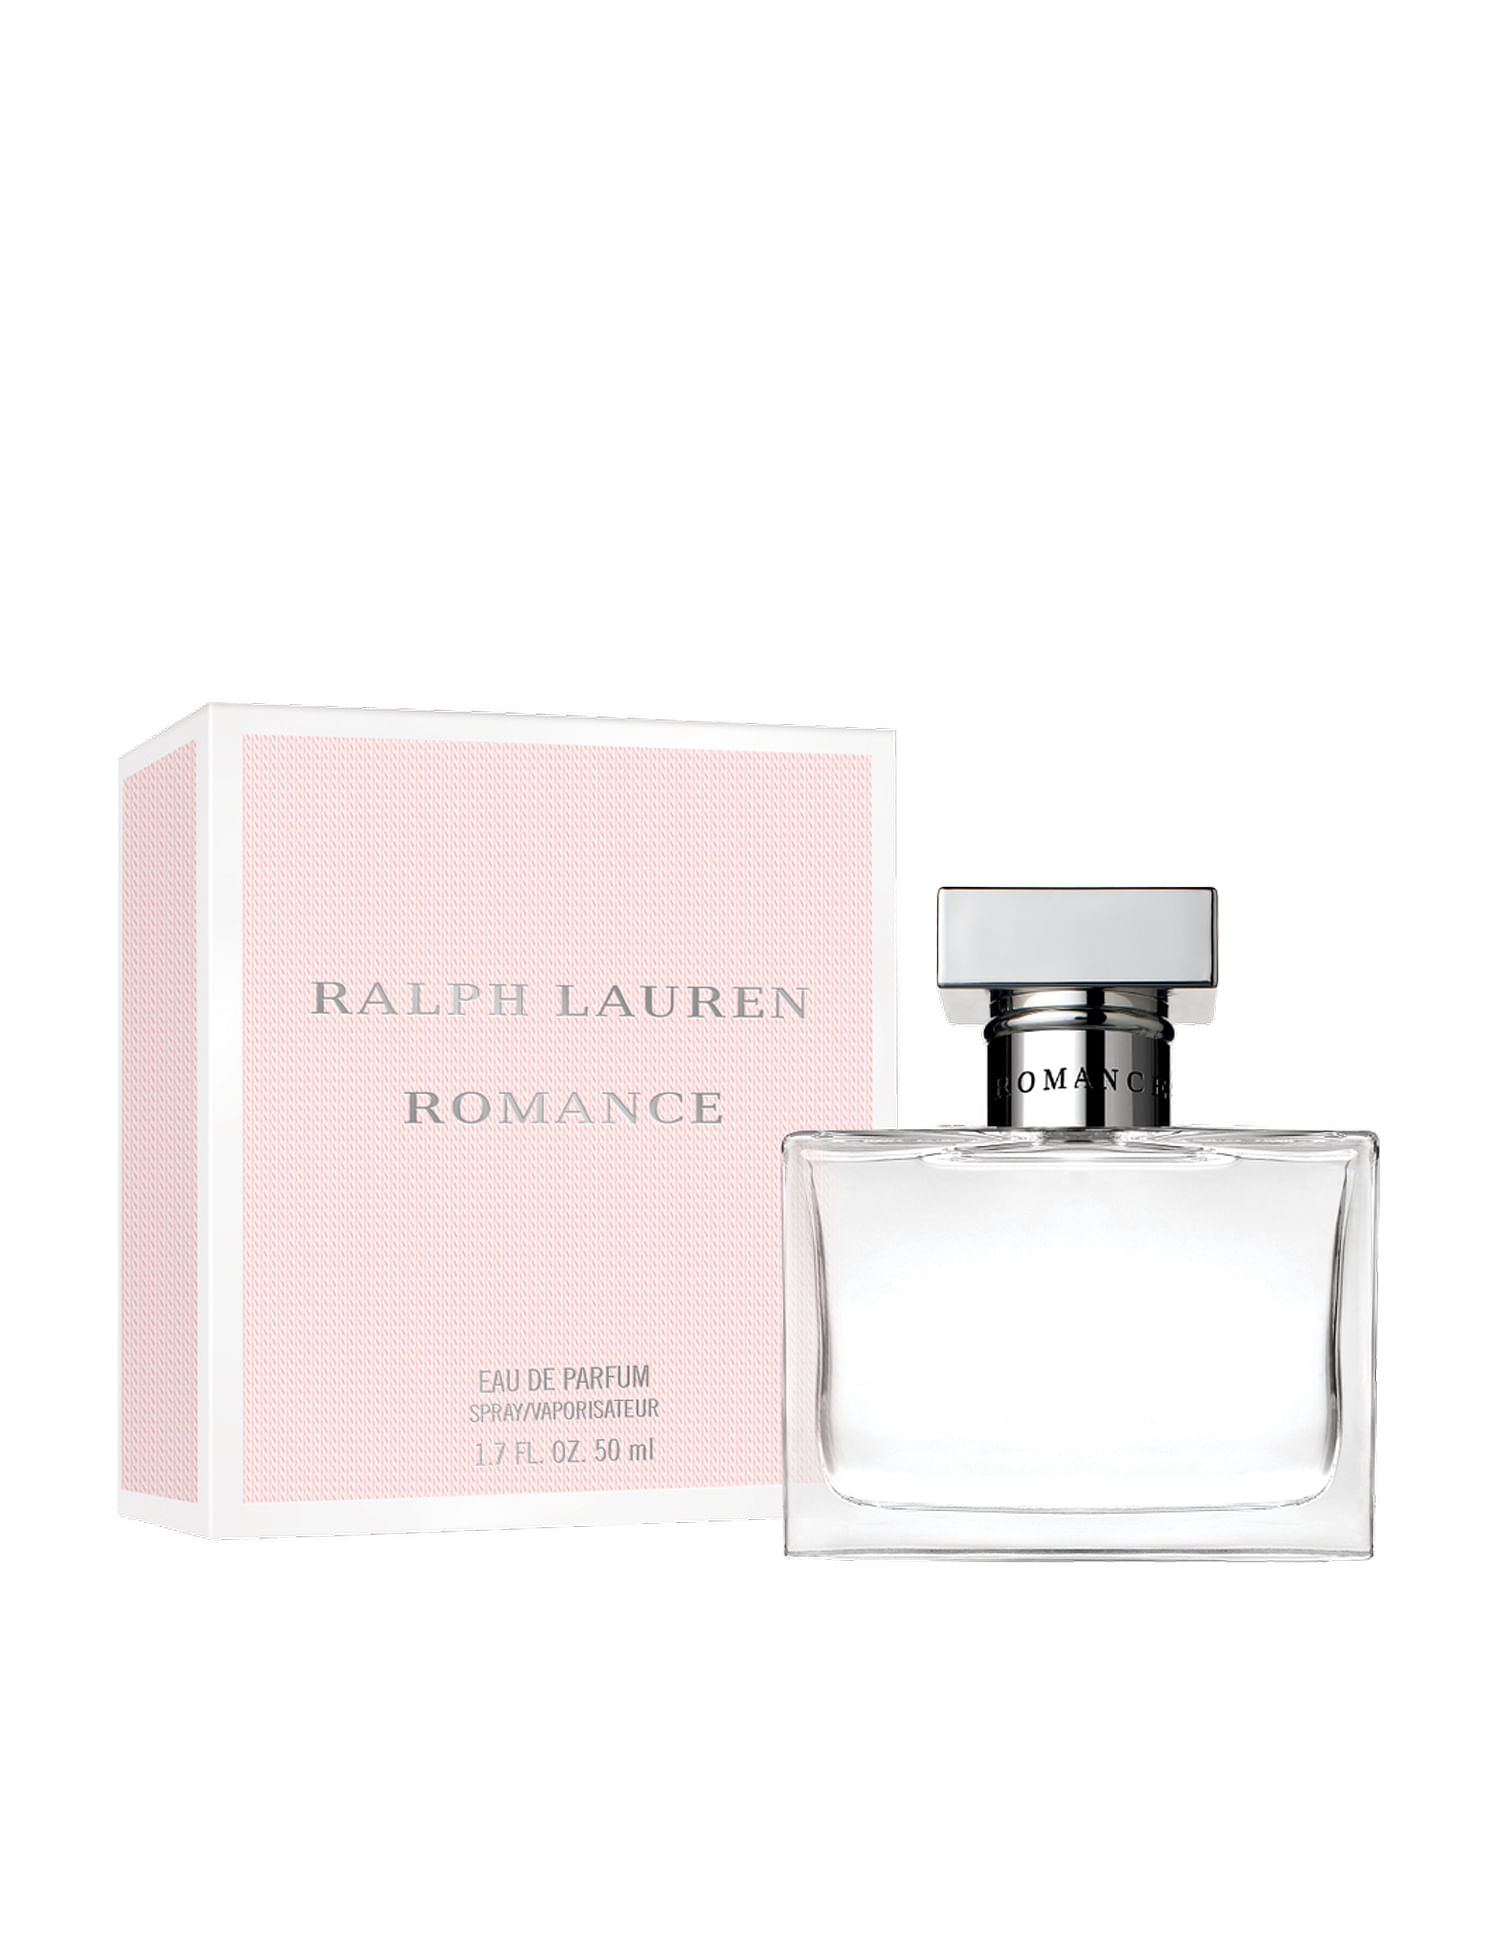 Buy RALPH LAUREN Romance Eau De Parfum 